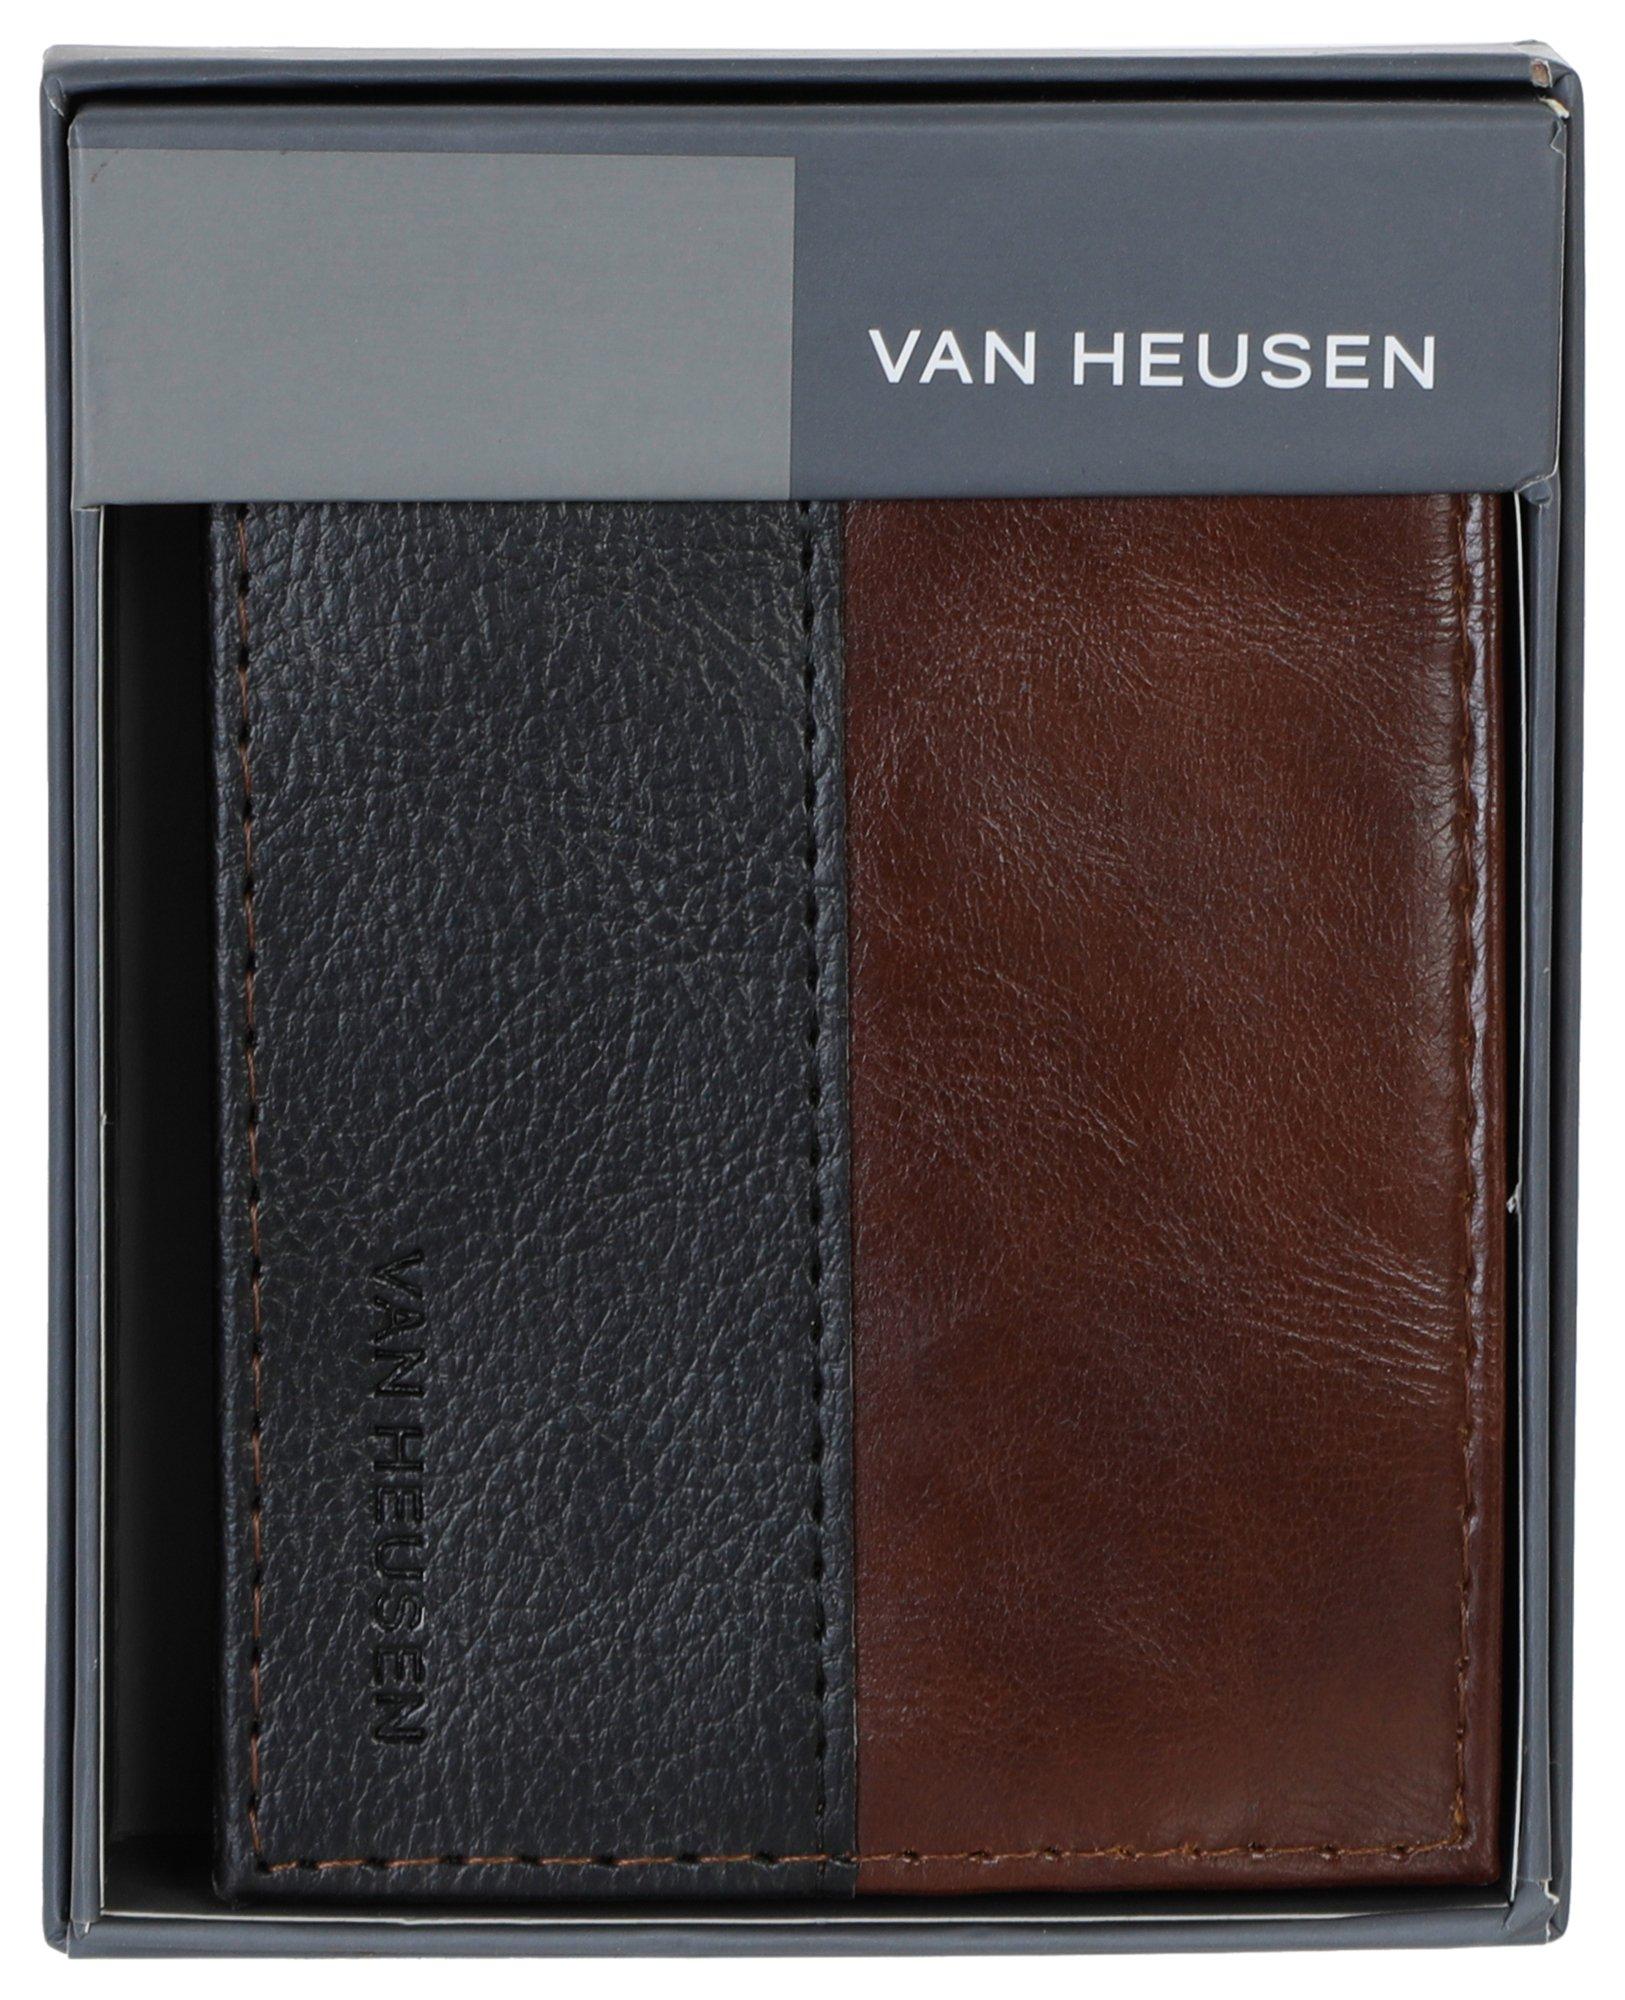 Men's Leather Passcase Wallet